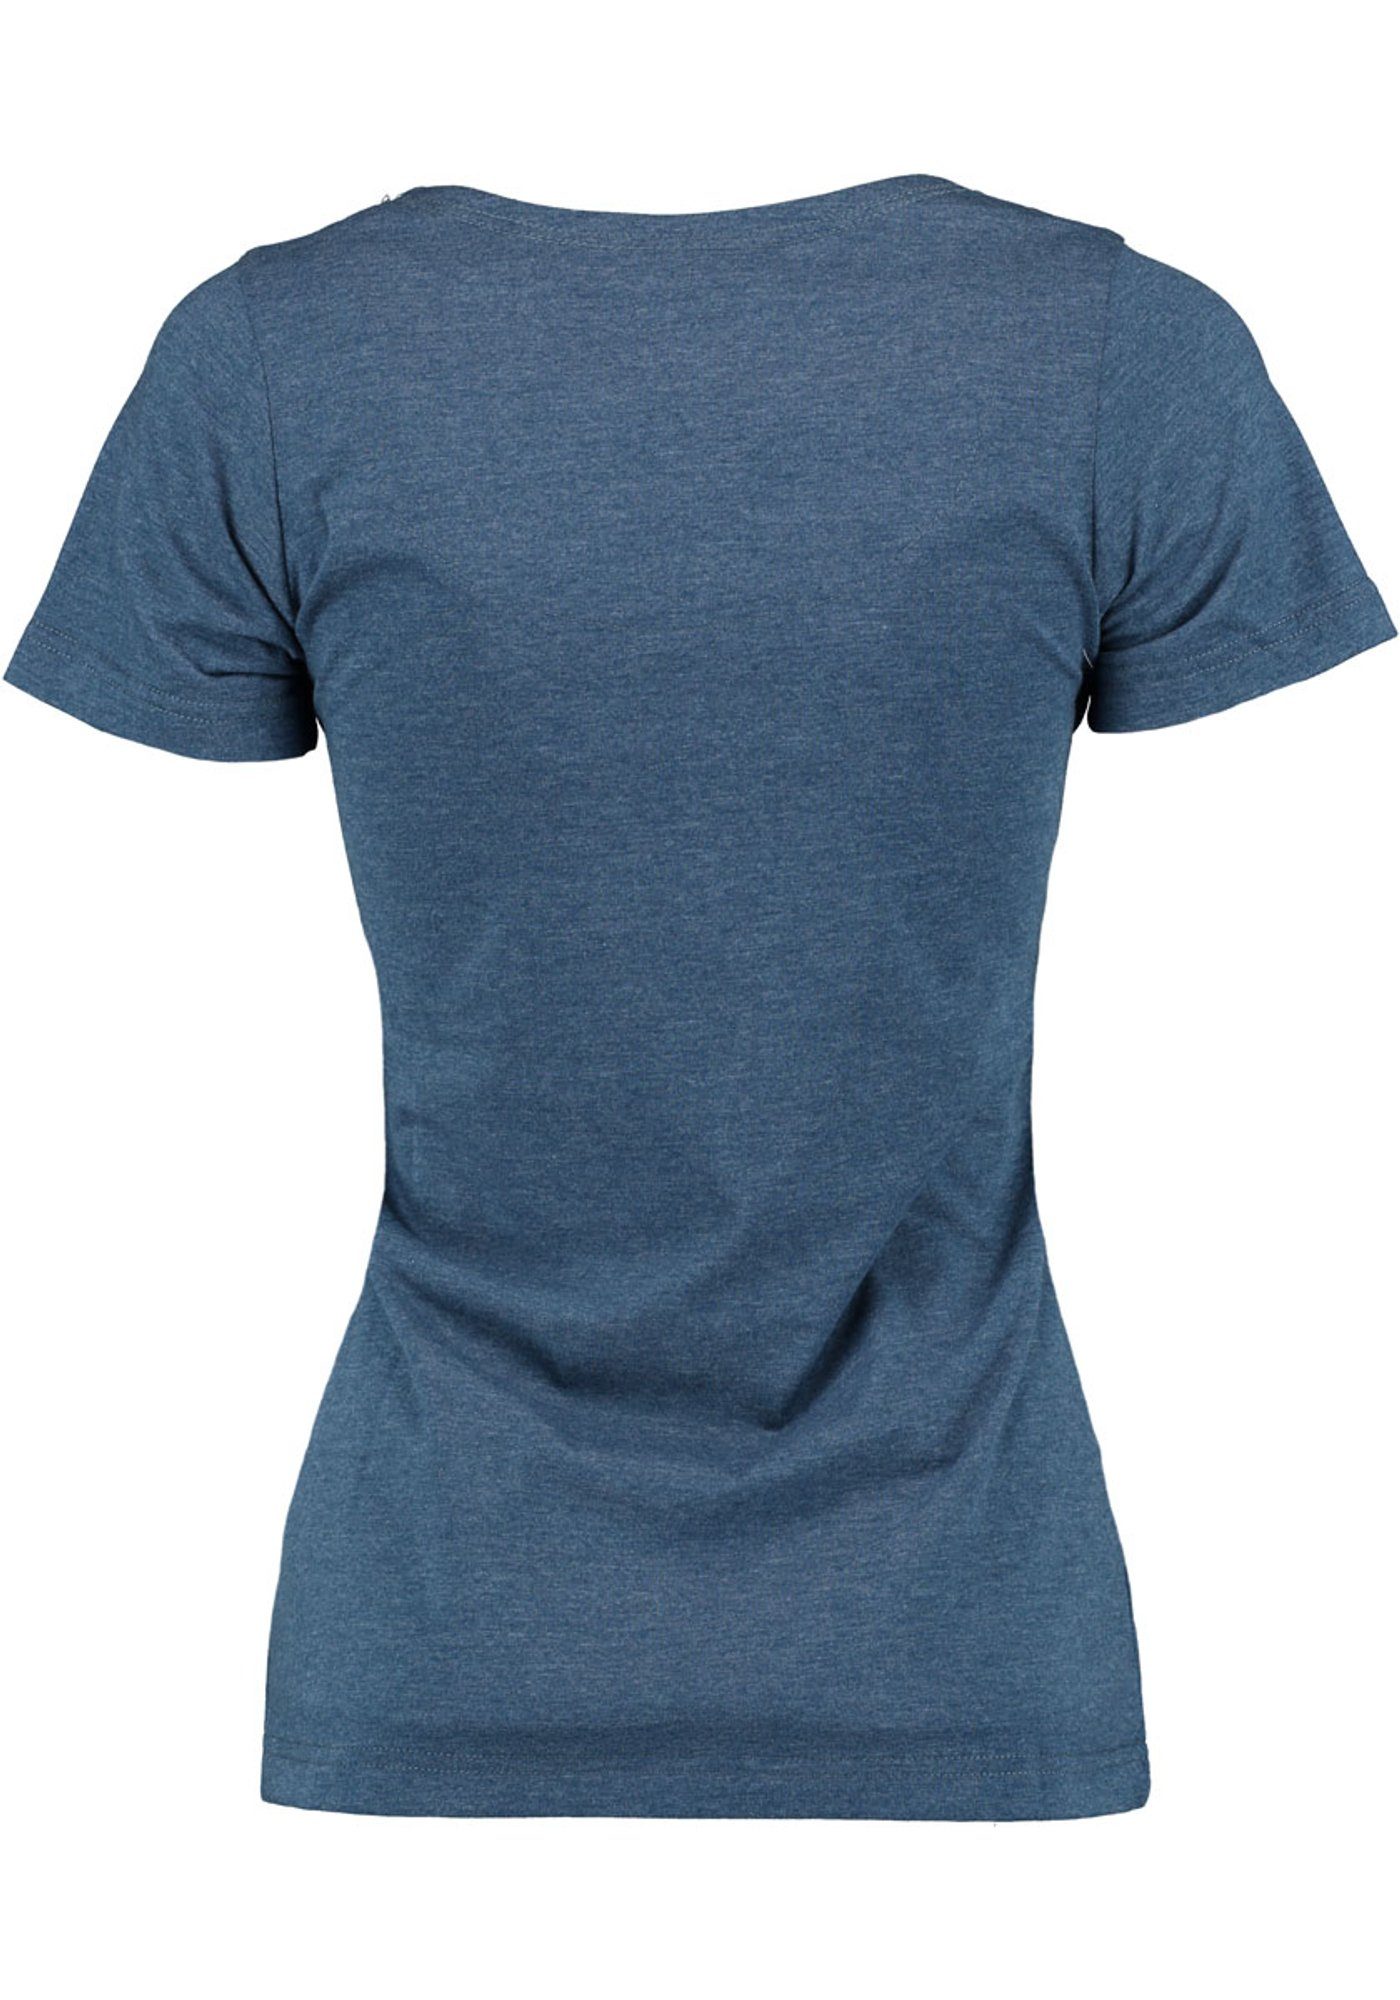 mittelblau Trachtenshirt T-Shirt mit dem Bügelmotiv Tacia Rundhalsausschnitt OS-Trachten Vorderteil auf und